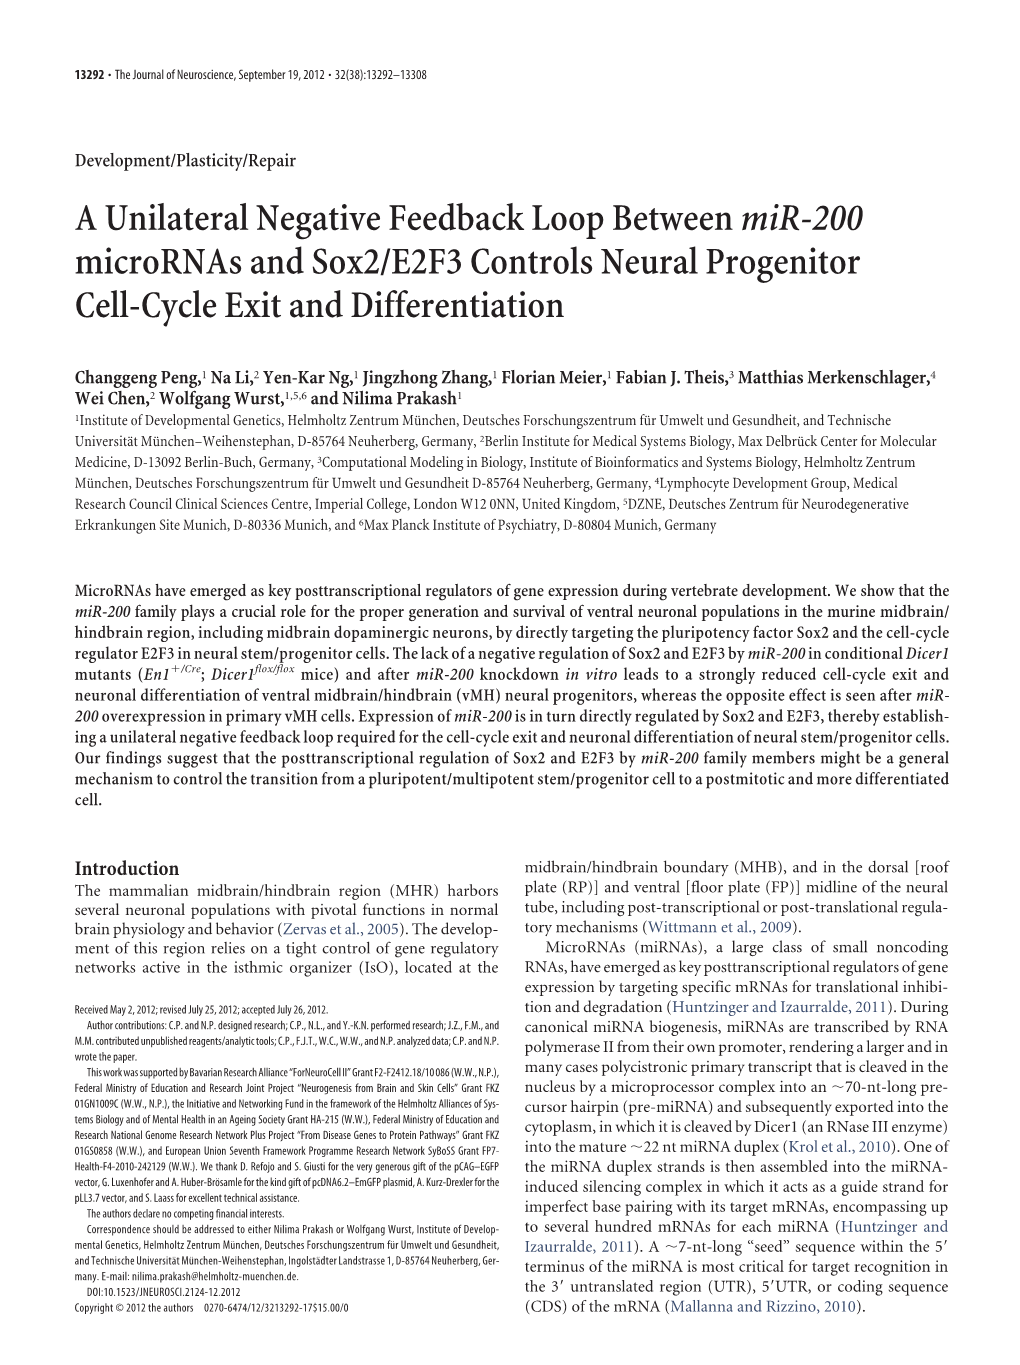 A Unilateral Negative Feedback Loop Betweenmir-200 Micrornas And